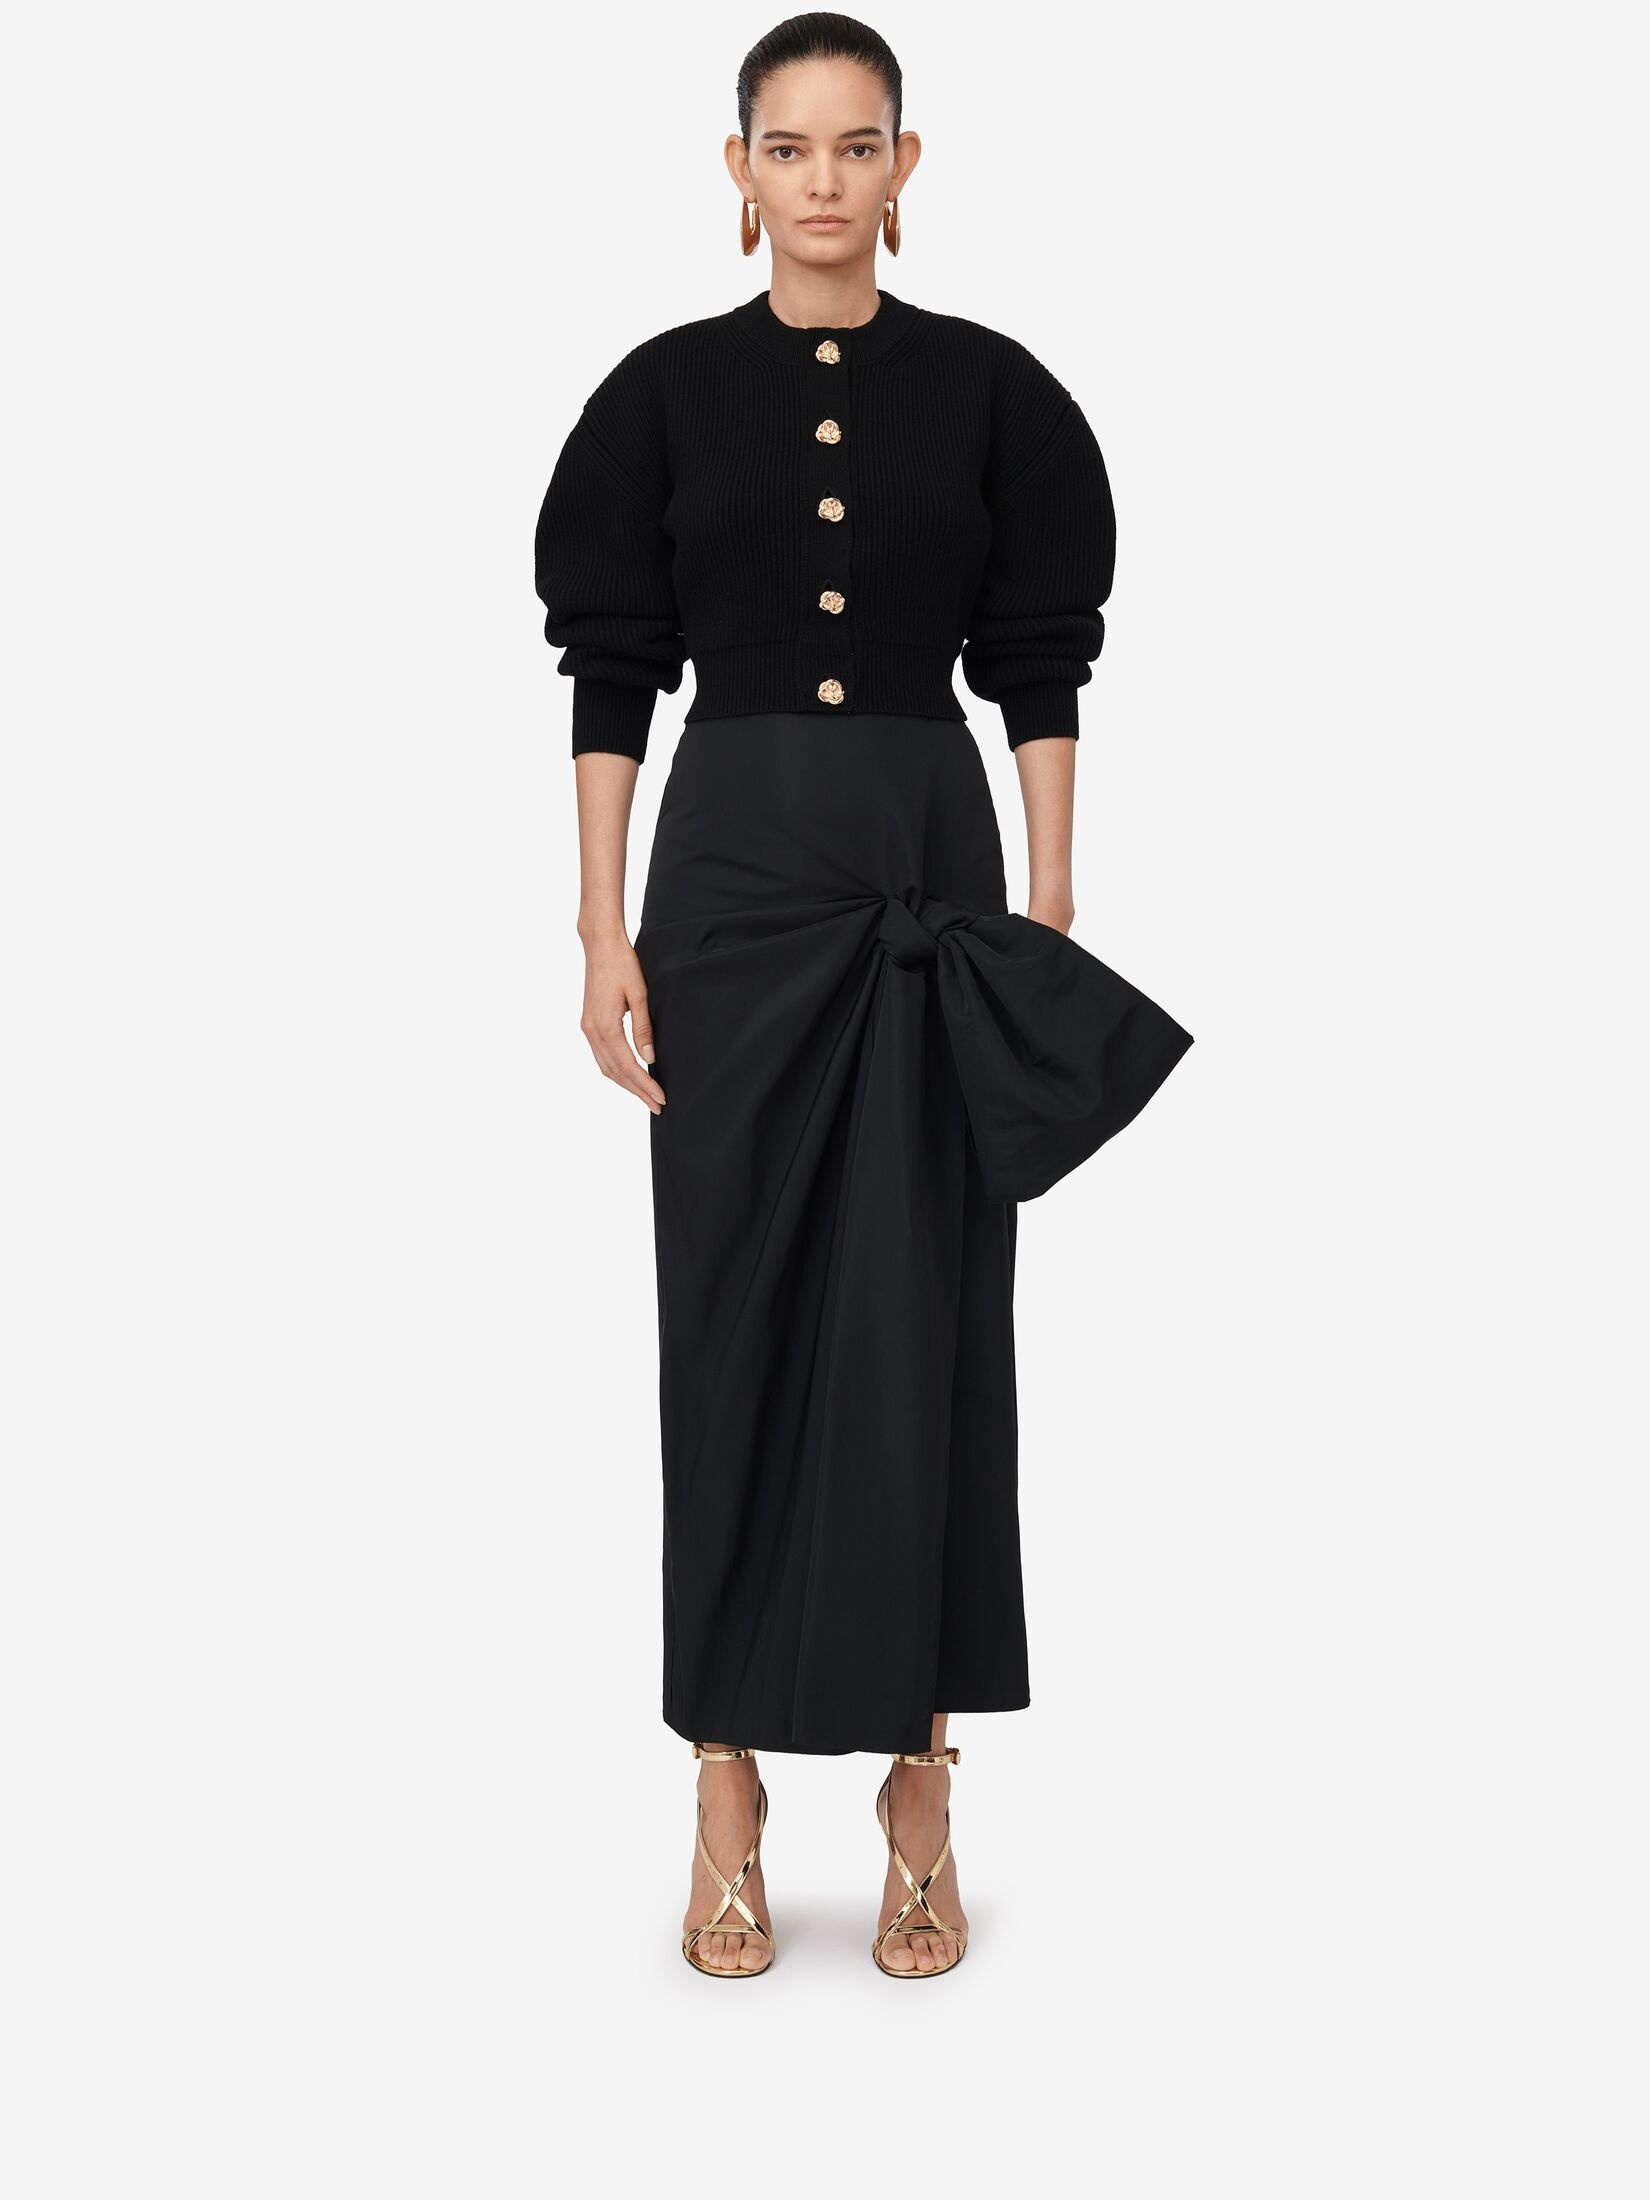 Women's Bow Detail Slim Skirt in Black - 2